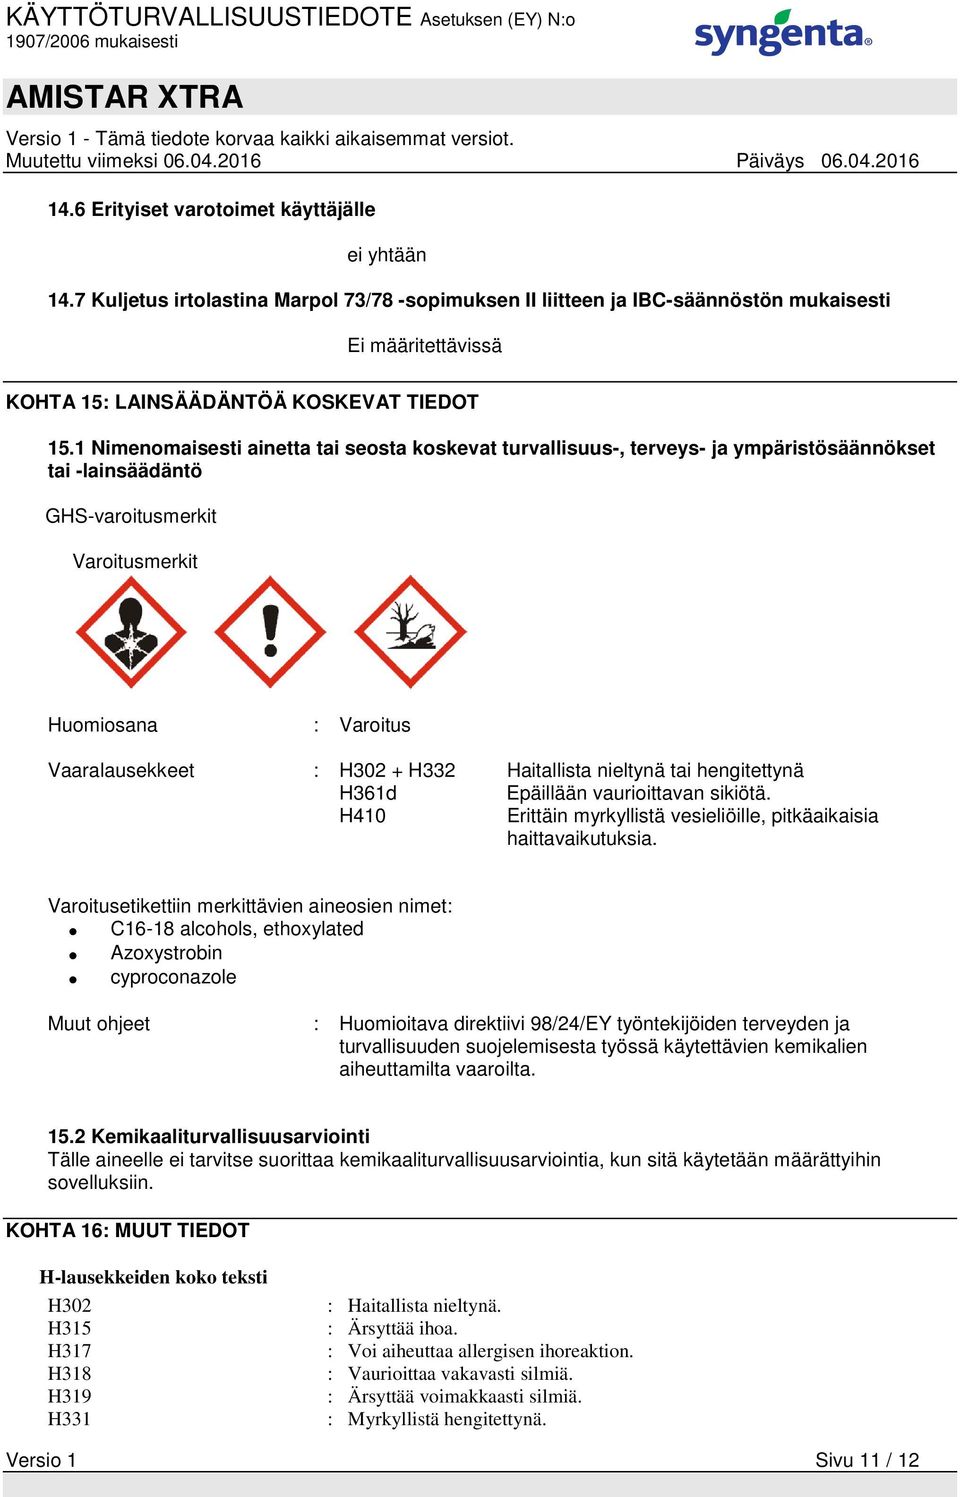 1 Nimenomaisesti ainetta tai seosta koskevat turvallisuus-, terveys- ja ympäristösäännökset tai -lainsäädäntö GHS-varoitusmerkit Varoitusmerkit Huomiosana : Varoitus Vaaralausekkeet : H302 + H332